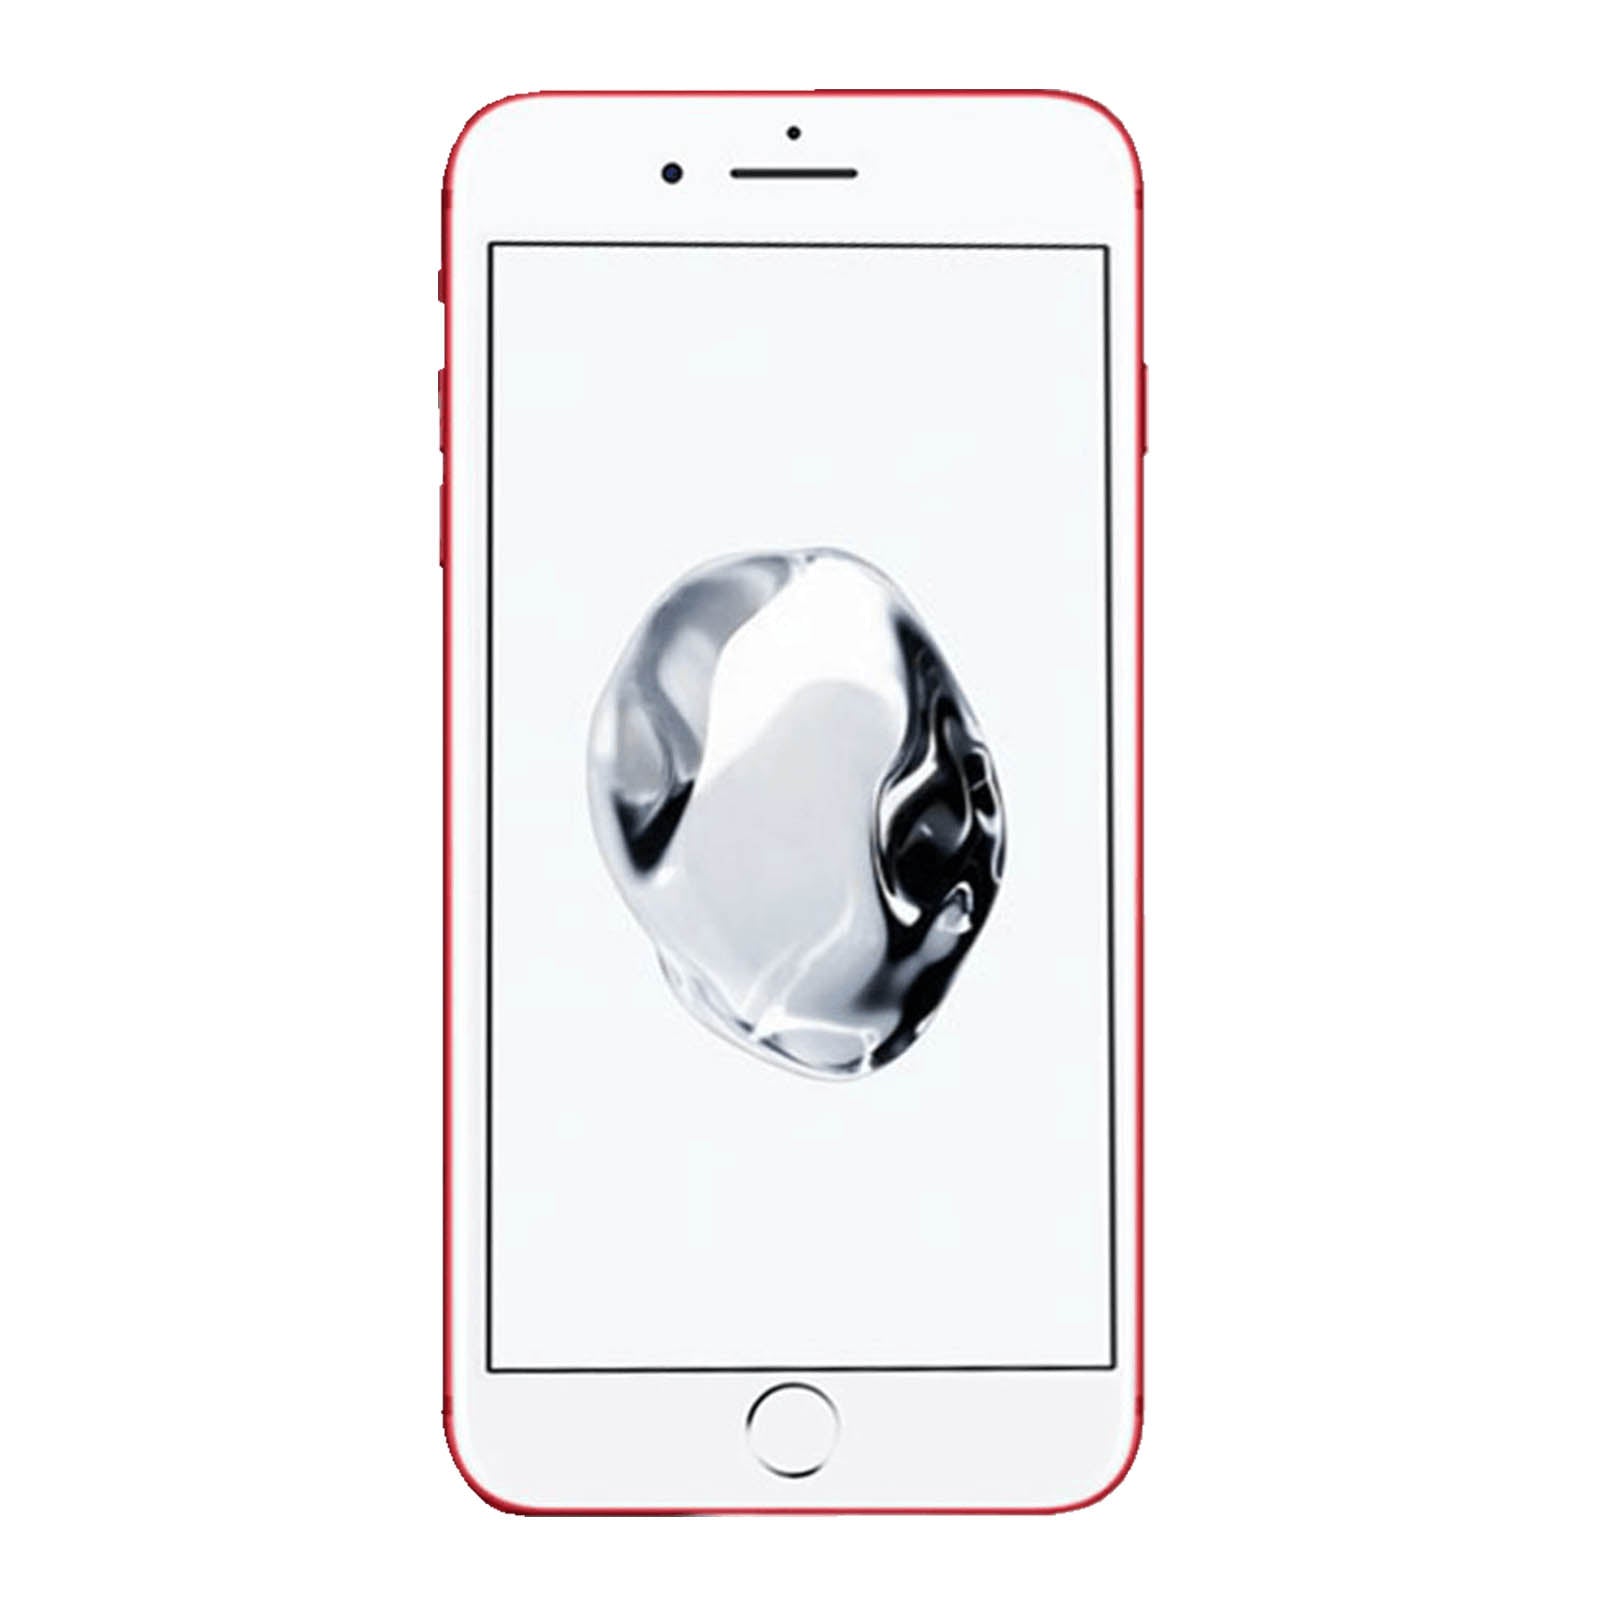 Apple iPhone 7 256GB Product Rosso Molto Buono Sbloccato